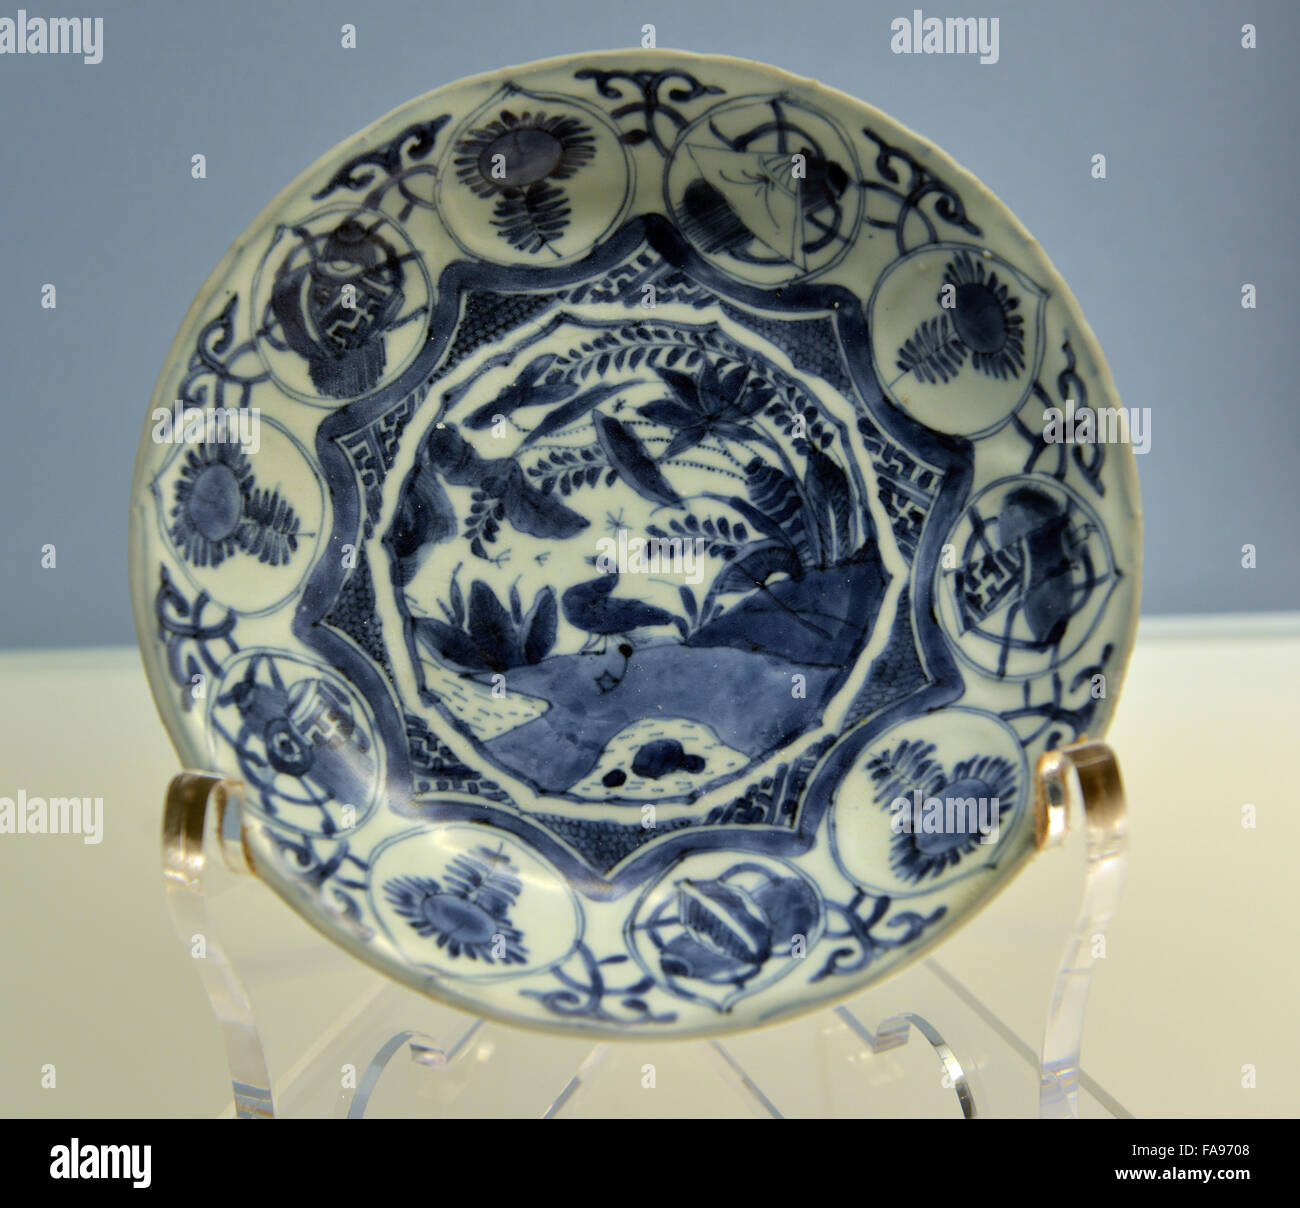 Blau-weiße Schale mit Wasservögel und Panel-Designs. Shanghai Museum. Stockfoto